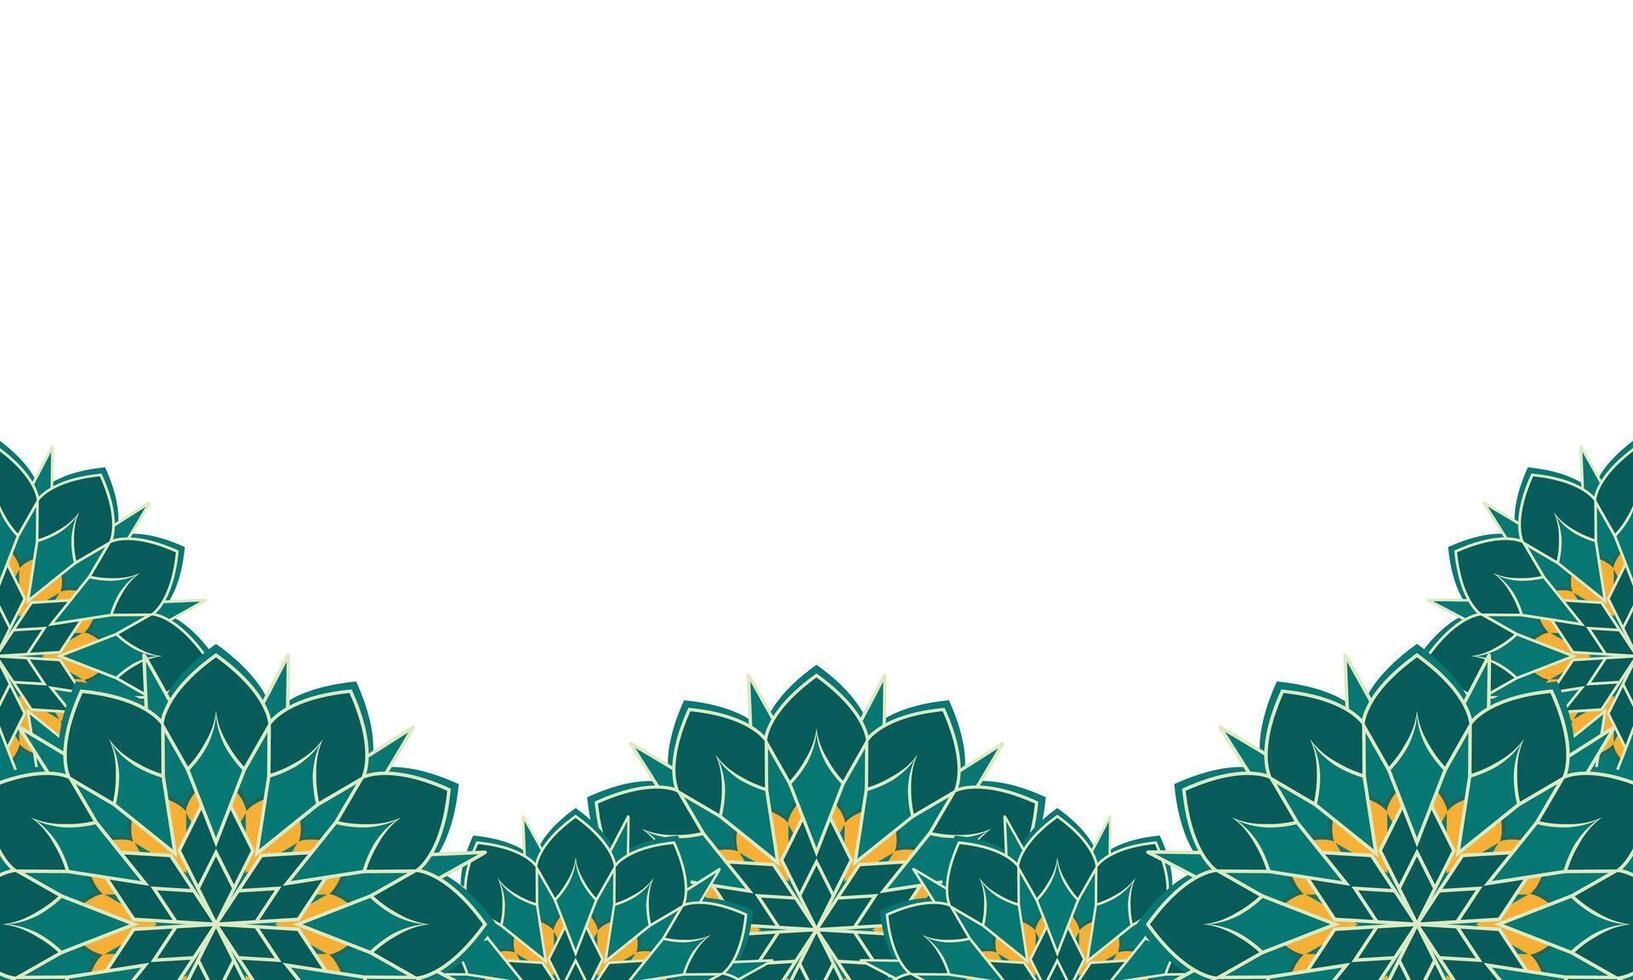 Islamitisch grens kader banier en achtergrond met groen mandala bloem element decoratie vector illustratie